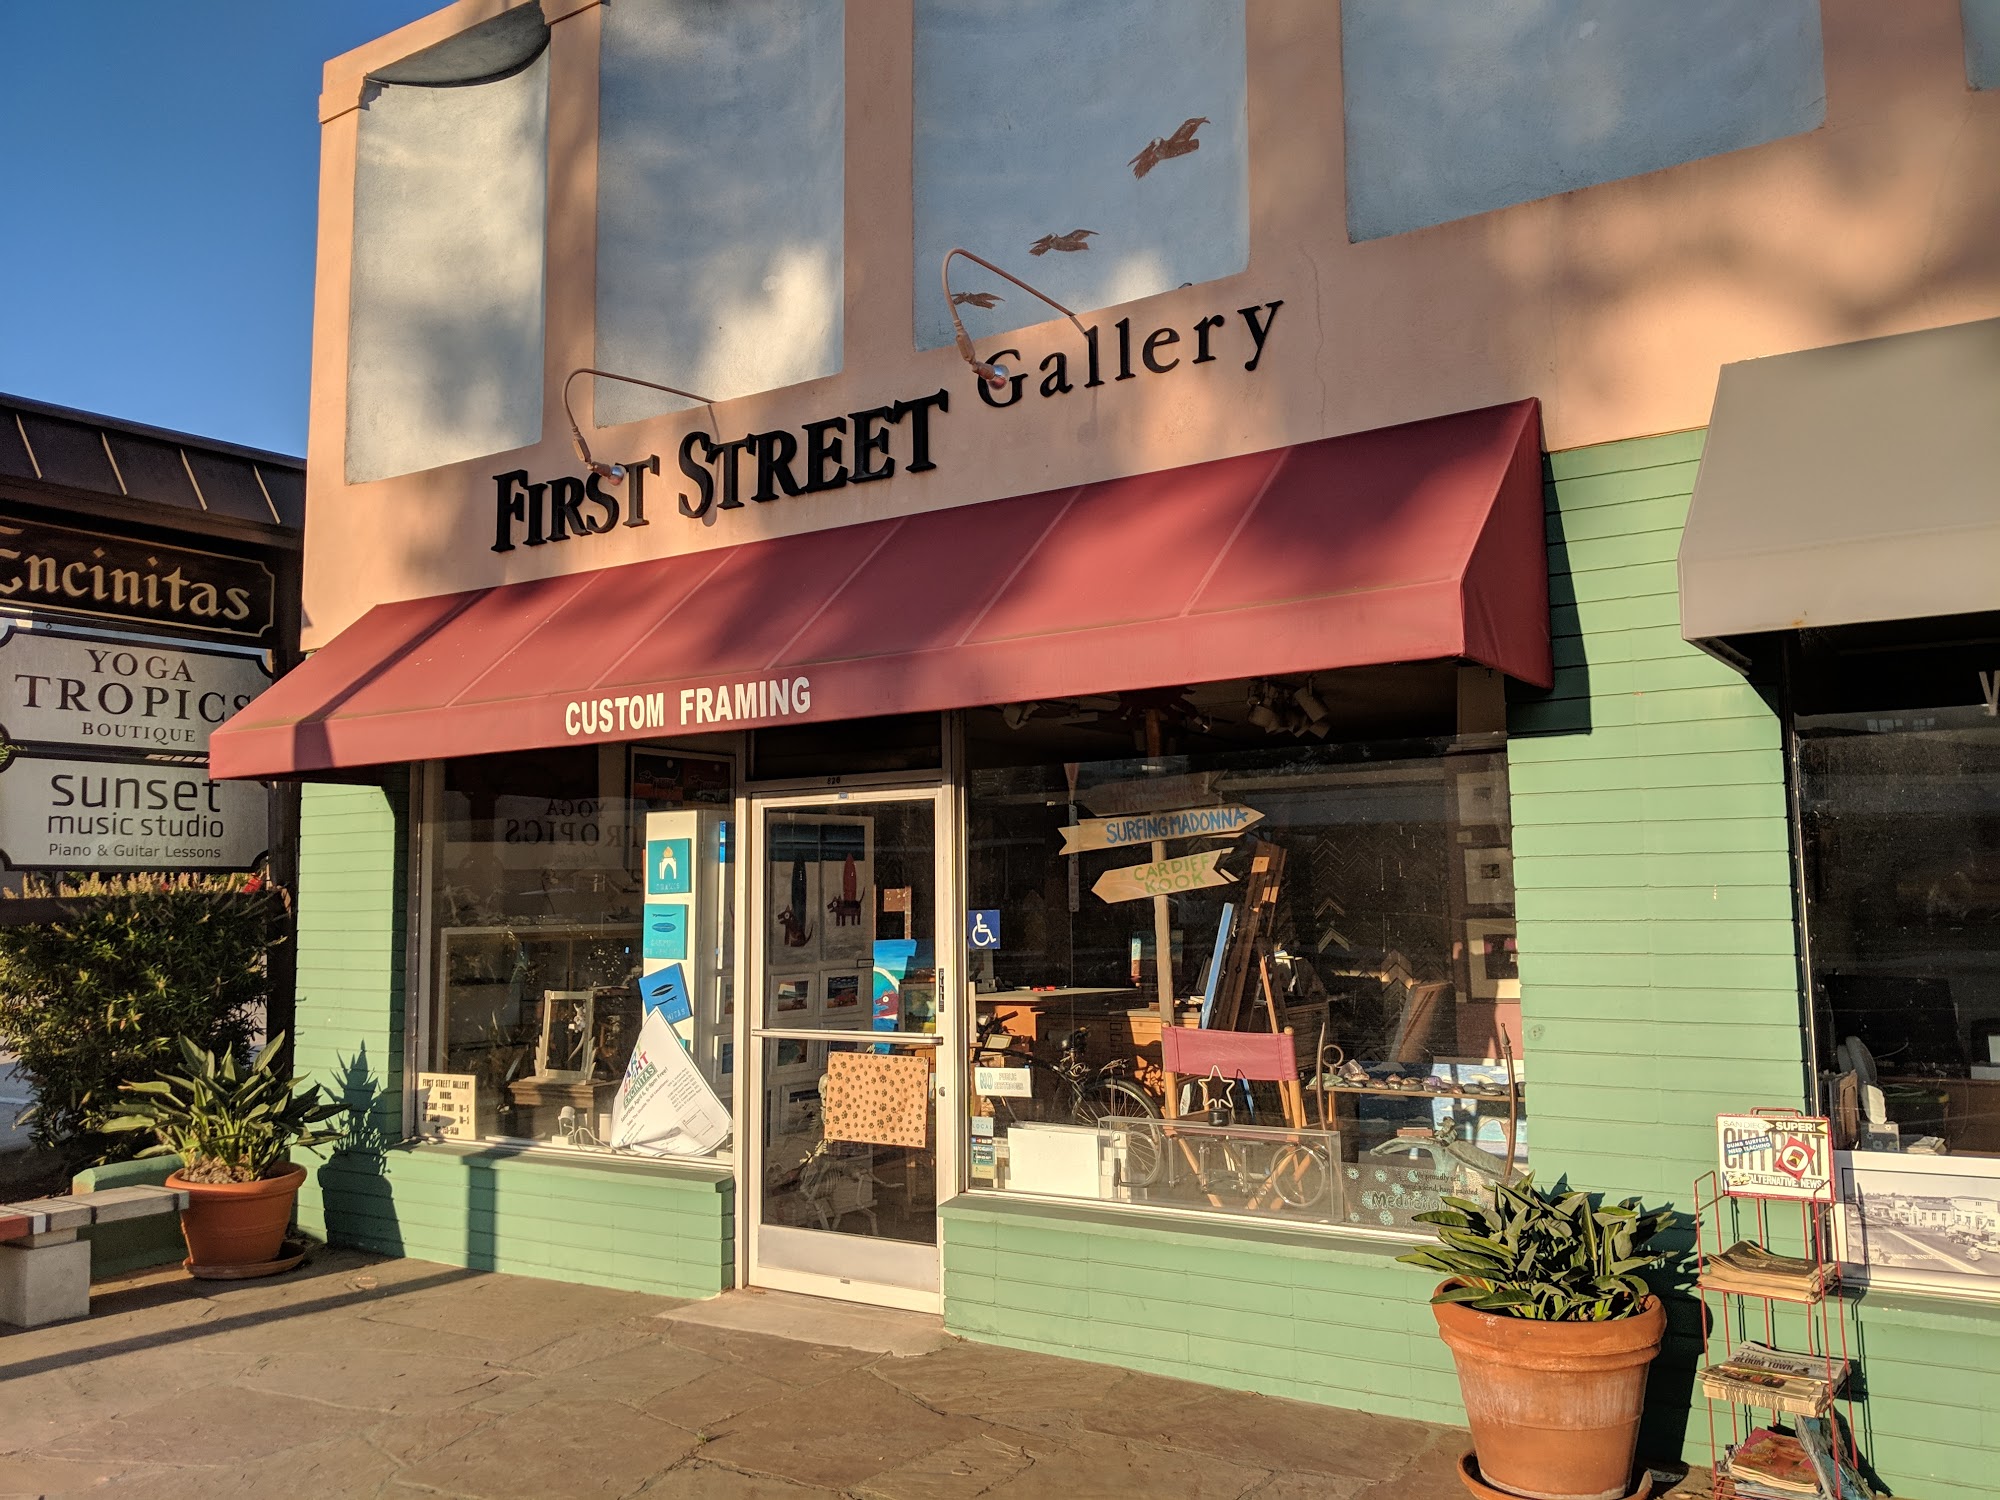 First Street Gallery & Custom Framing